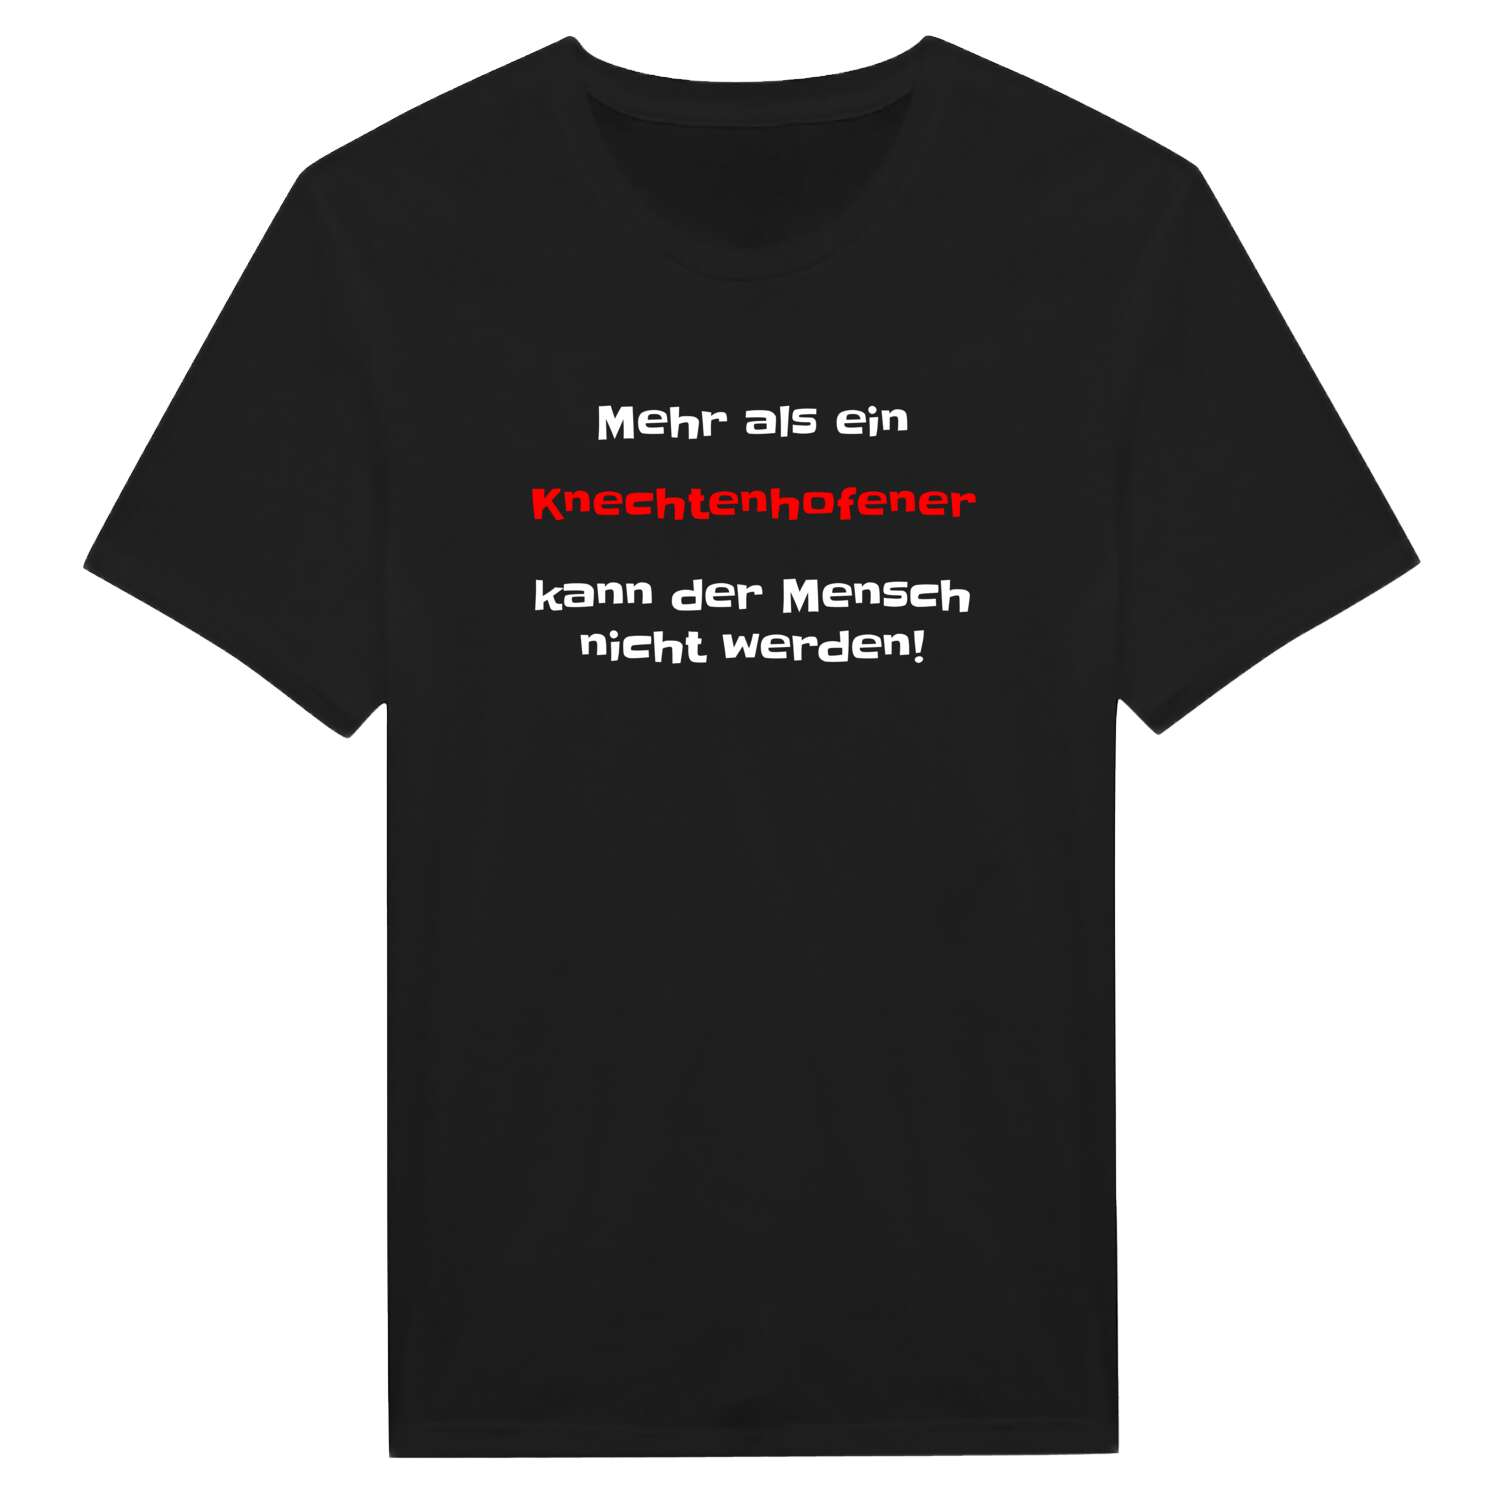 Knechtenhofen T-Shirt »Mehr als ein«